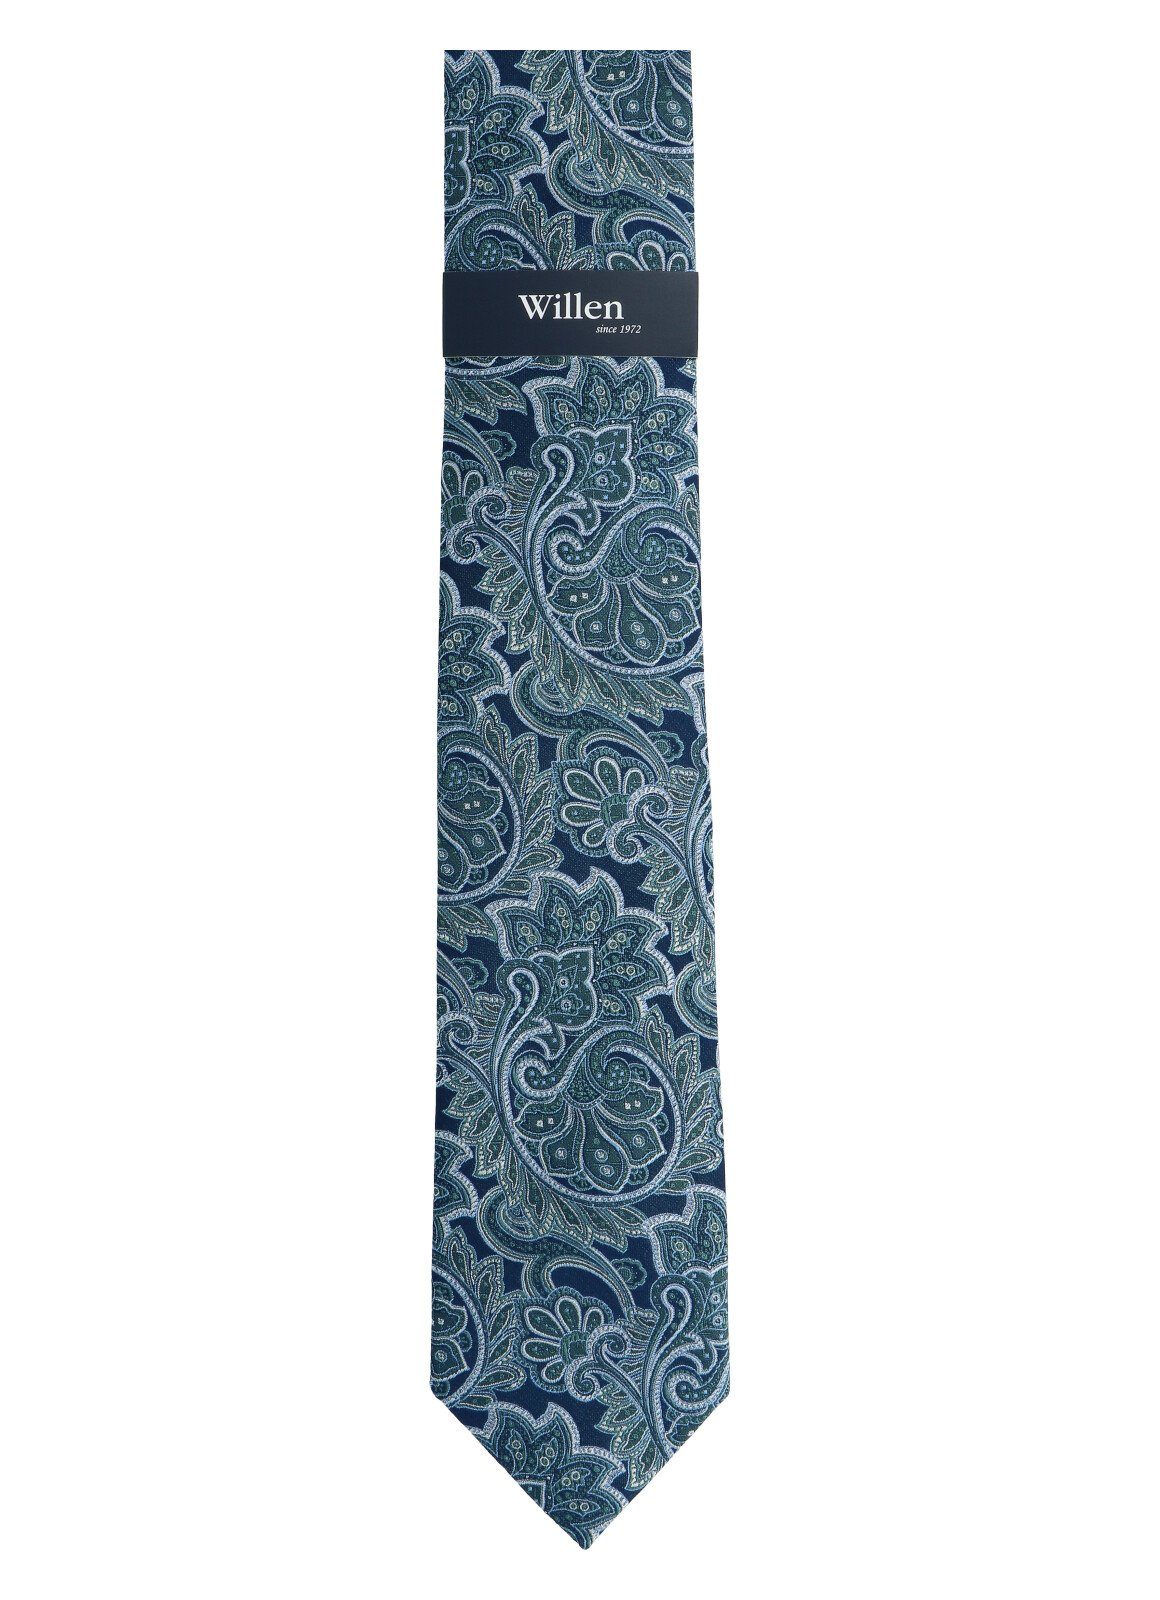 MINT WILLEN Krawatte